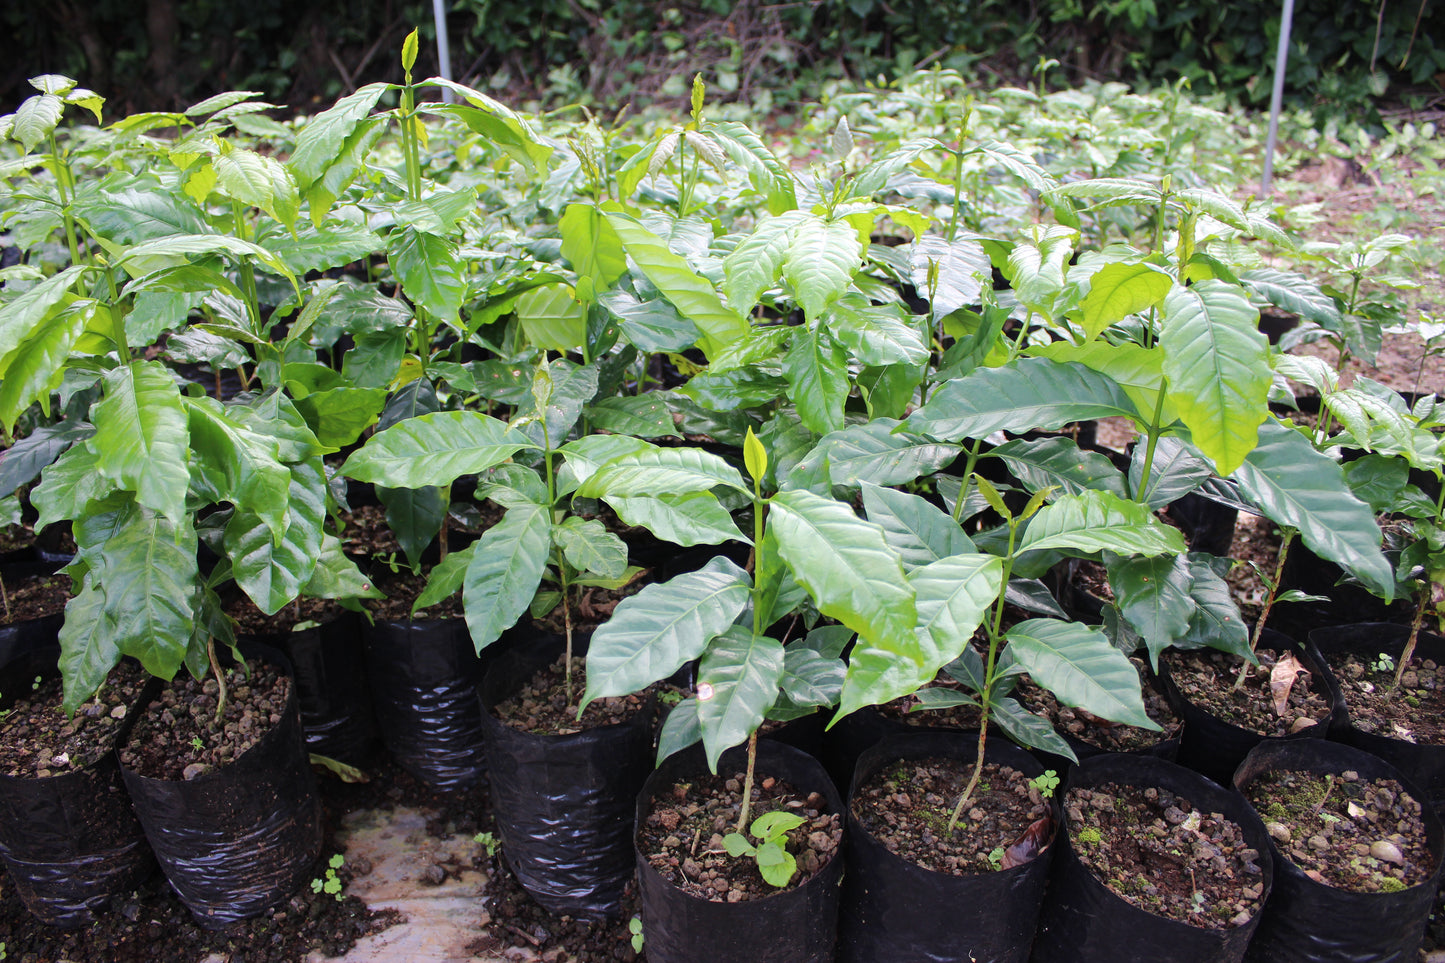 Kona coffee plants growing in the soil